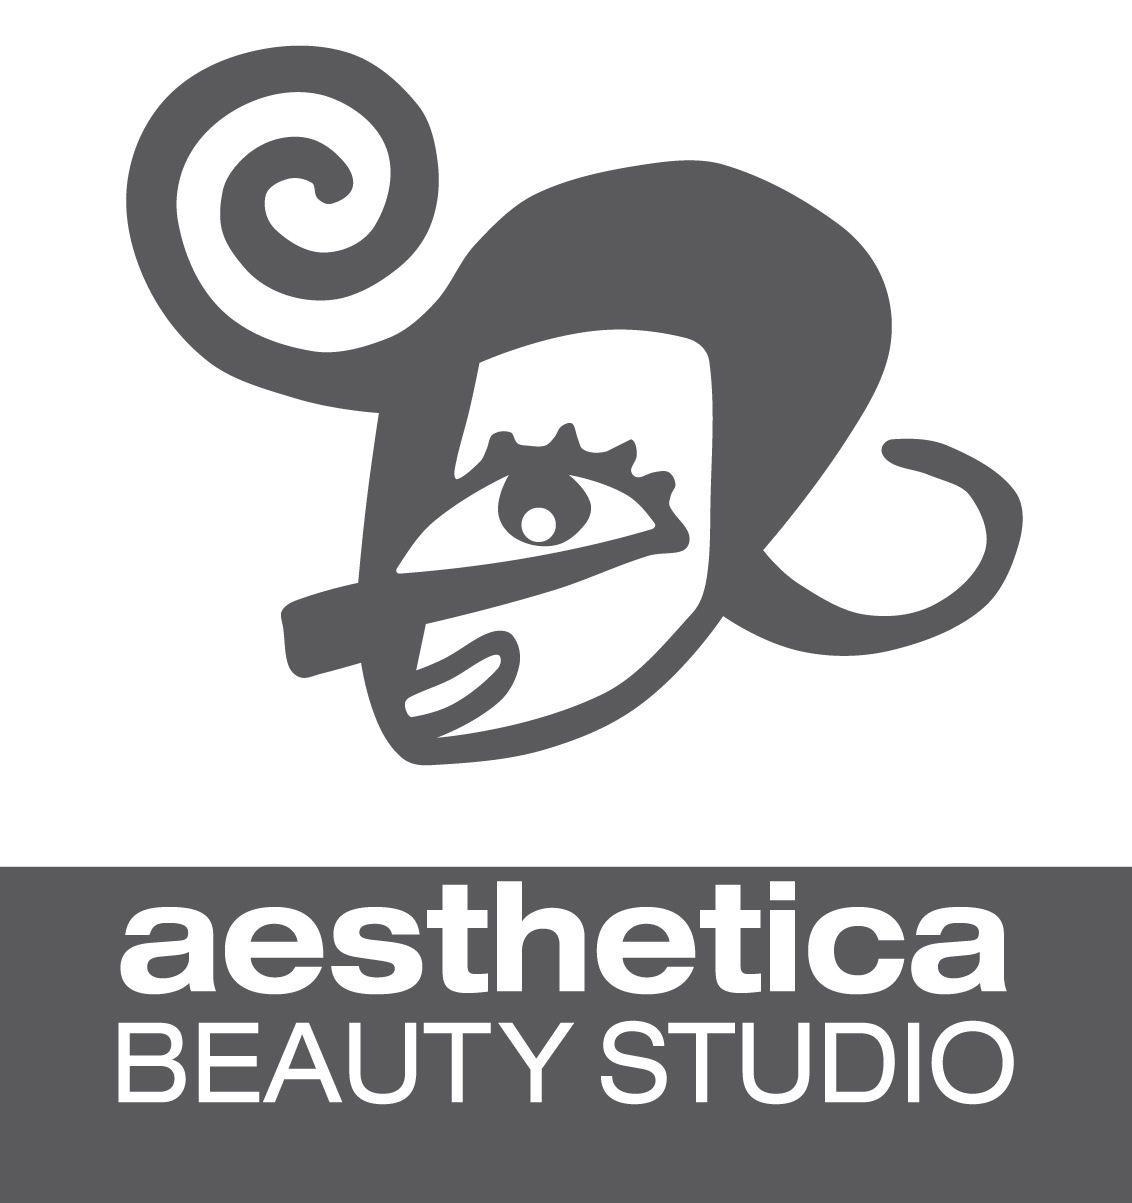 Aesthetica Beauty Studio